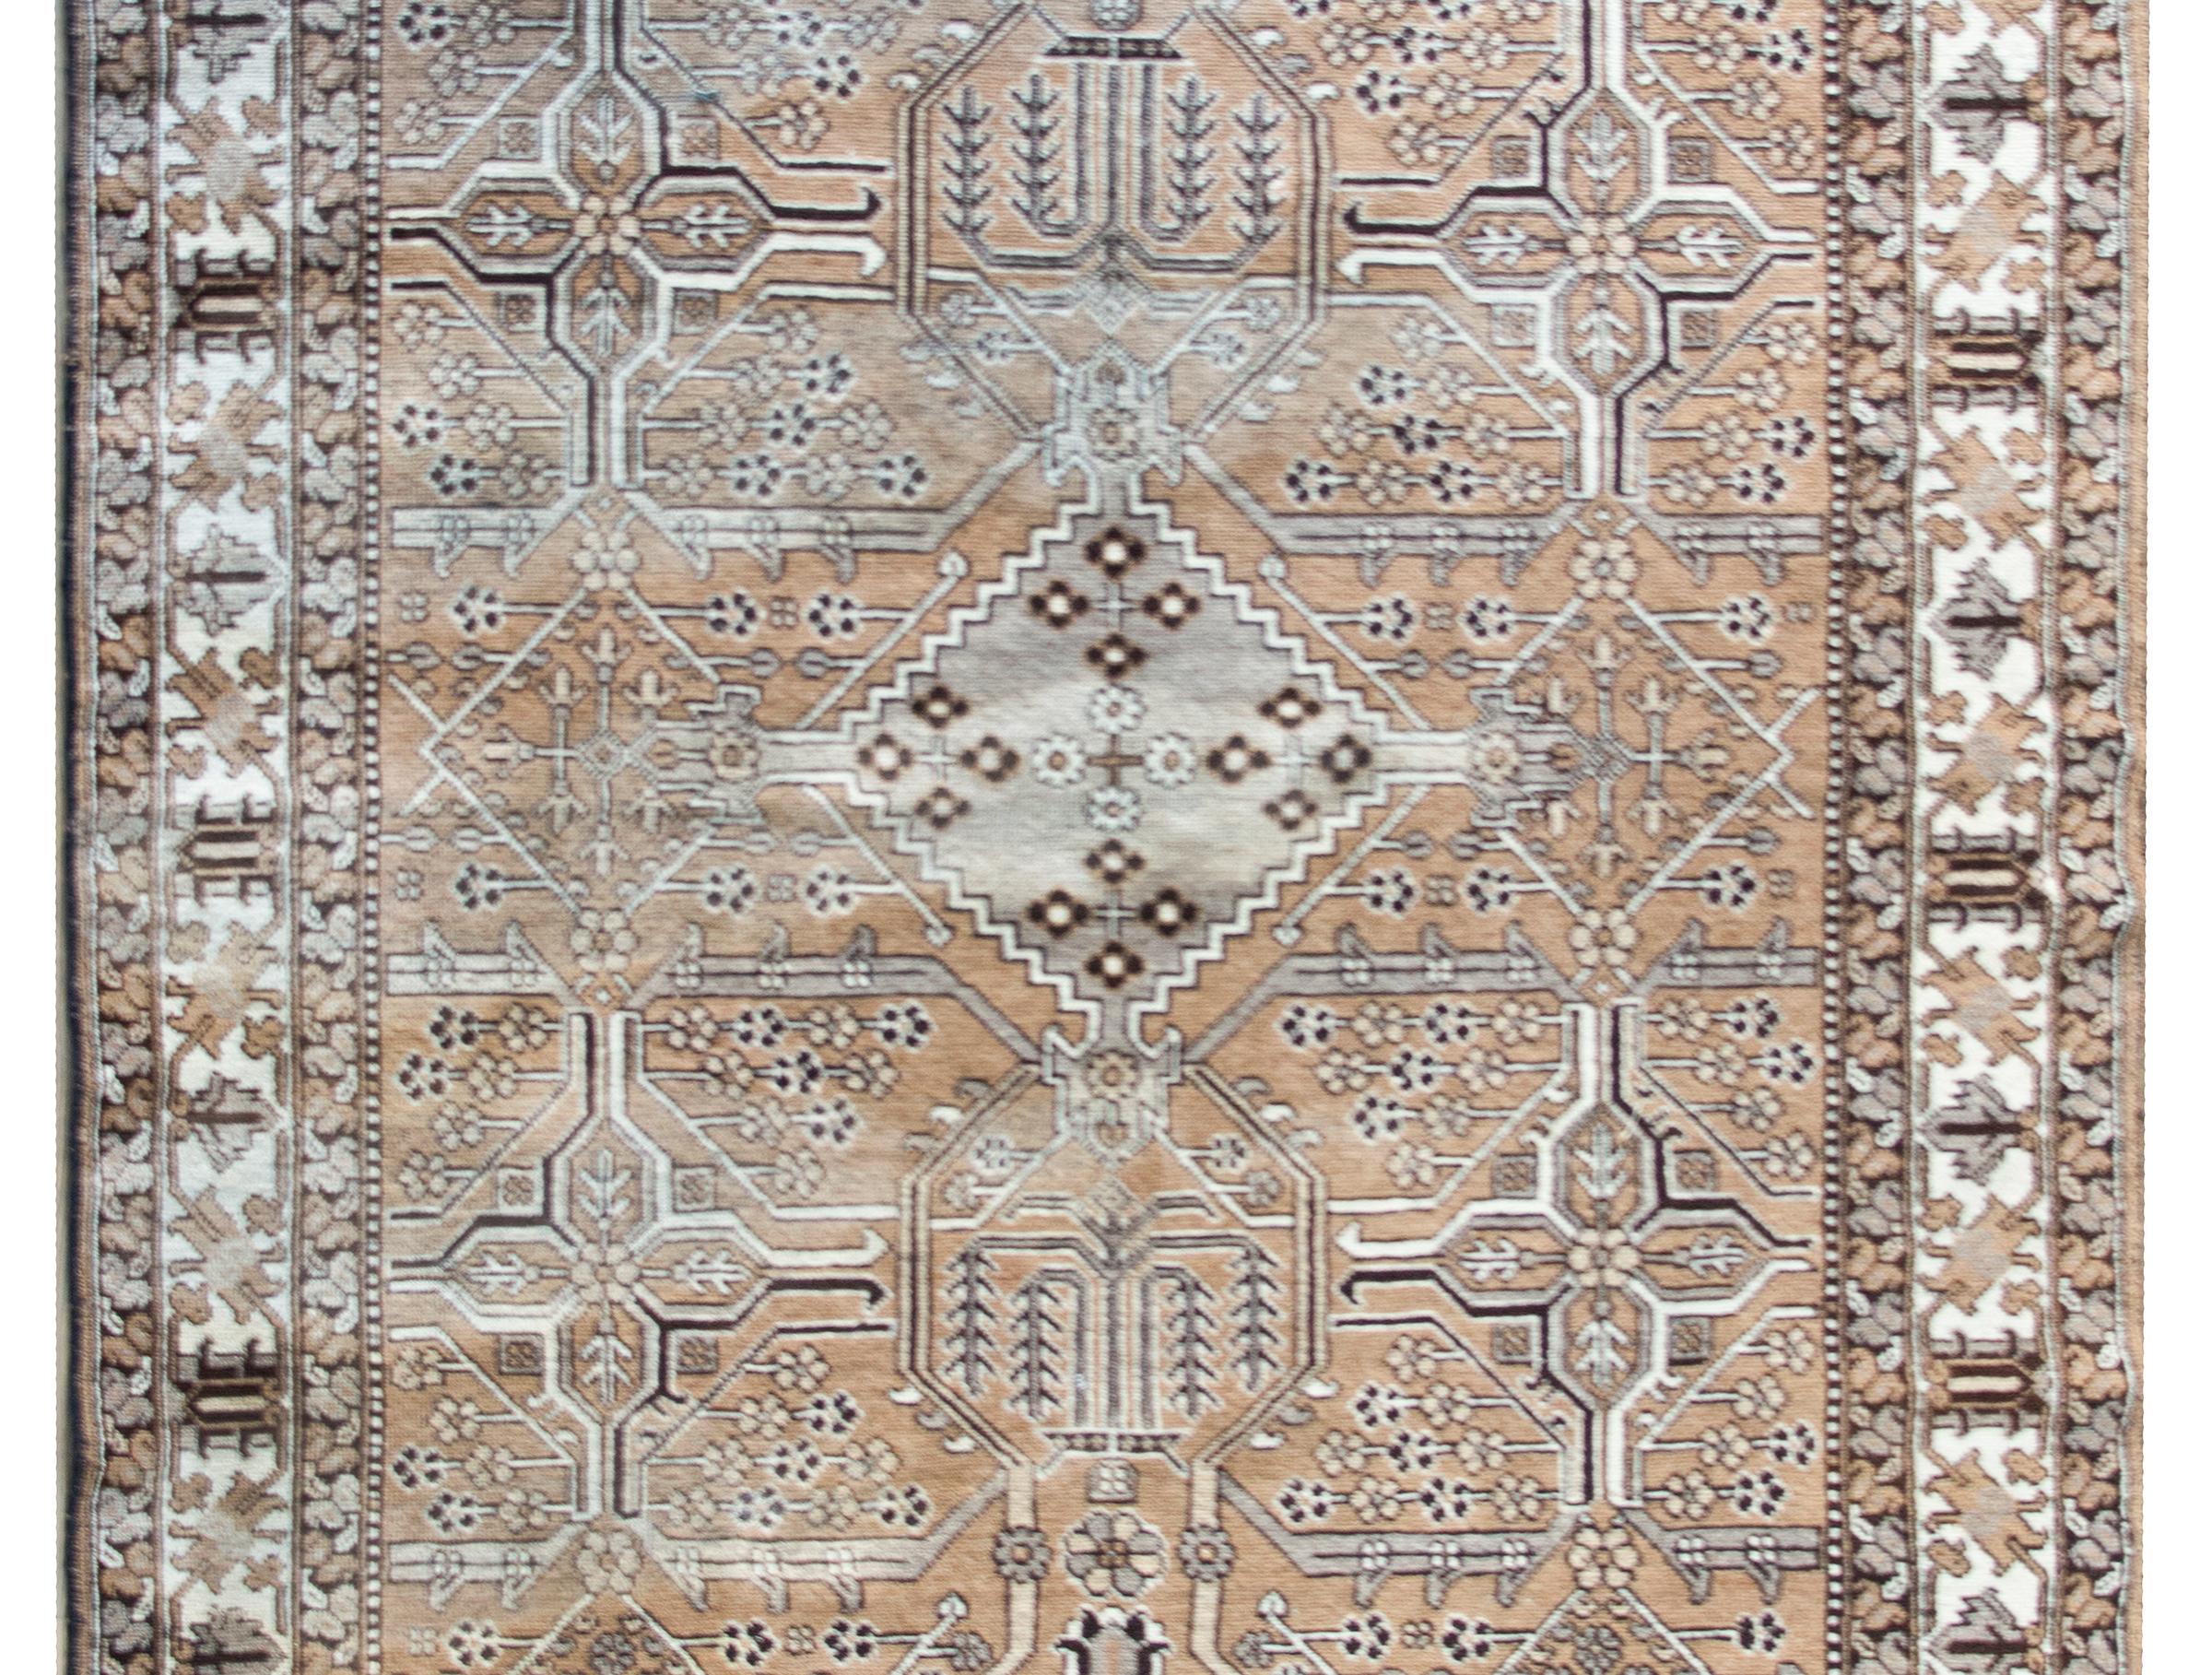 Magnifique tapis persan Bakhtiari vintage avec un magnifique motif géométrique en patchwork d'une myriade de fleurs et de vignes disposées en treillis, entouré d'une large bordure avec un motif floral et de feuilles à grande échelle flanqué d'une